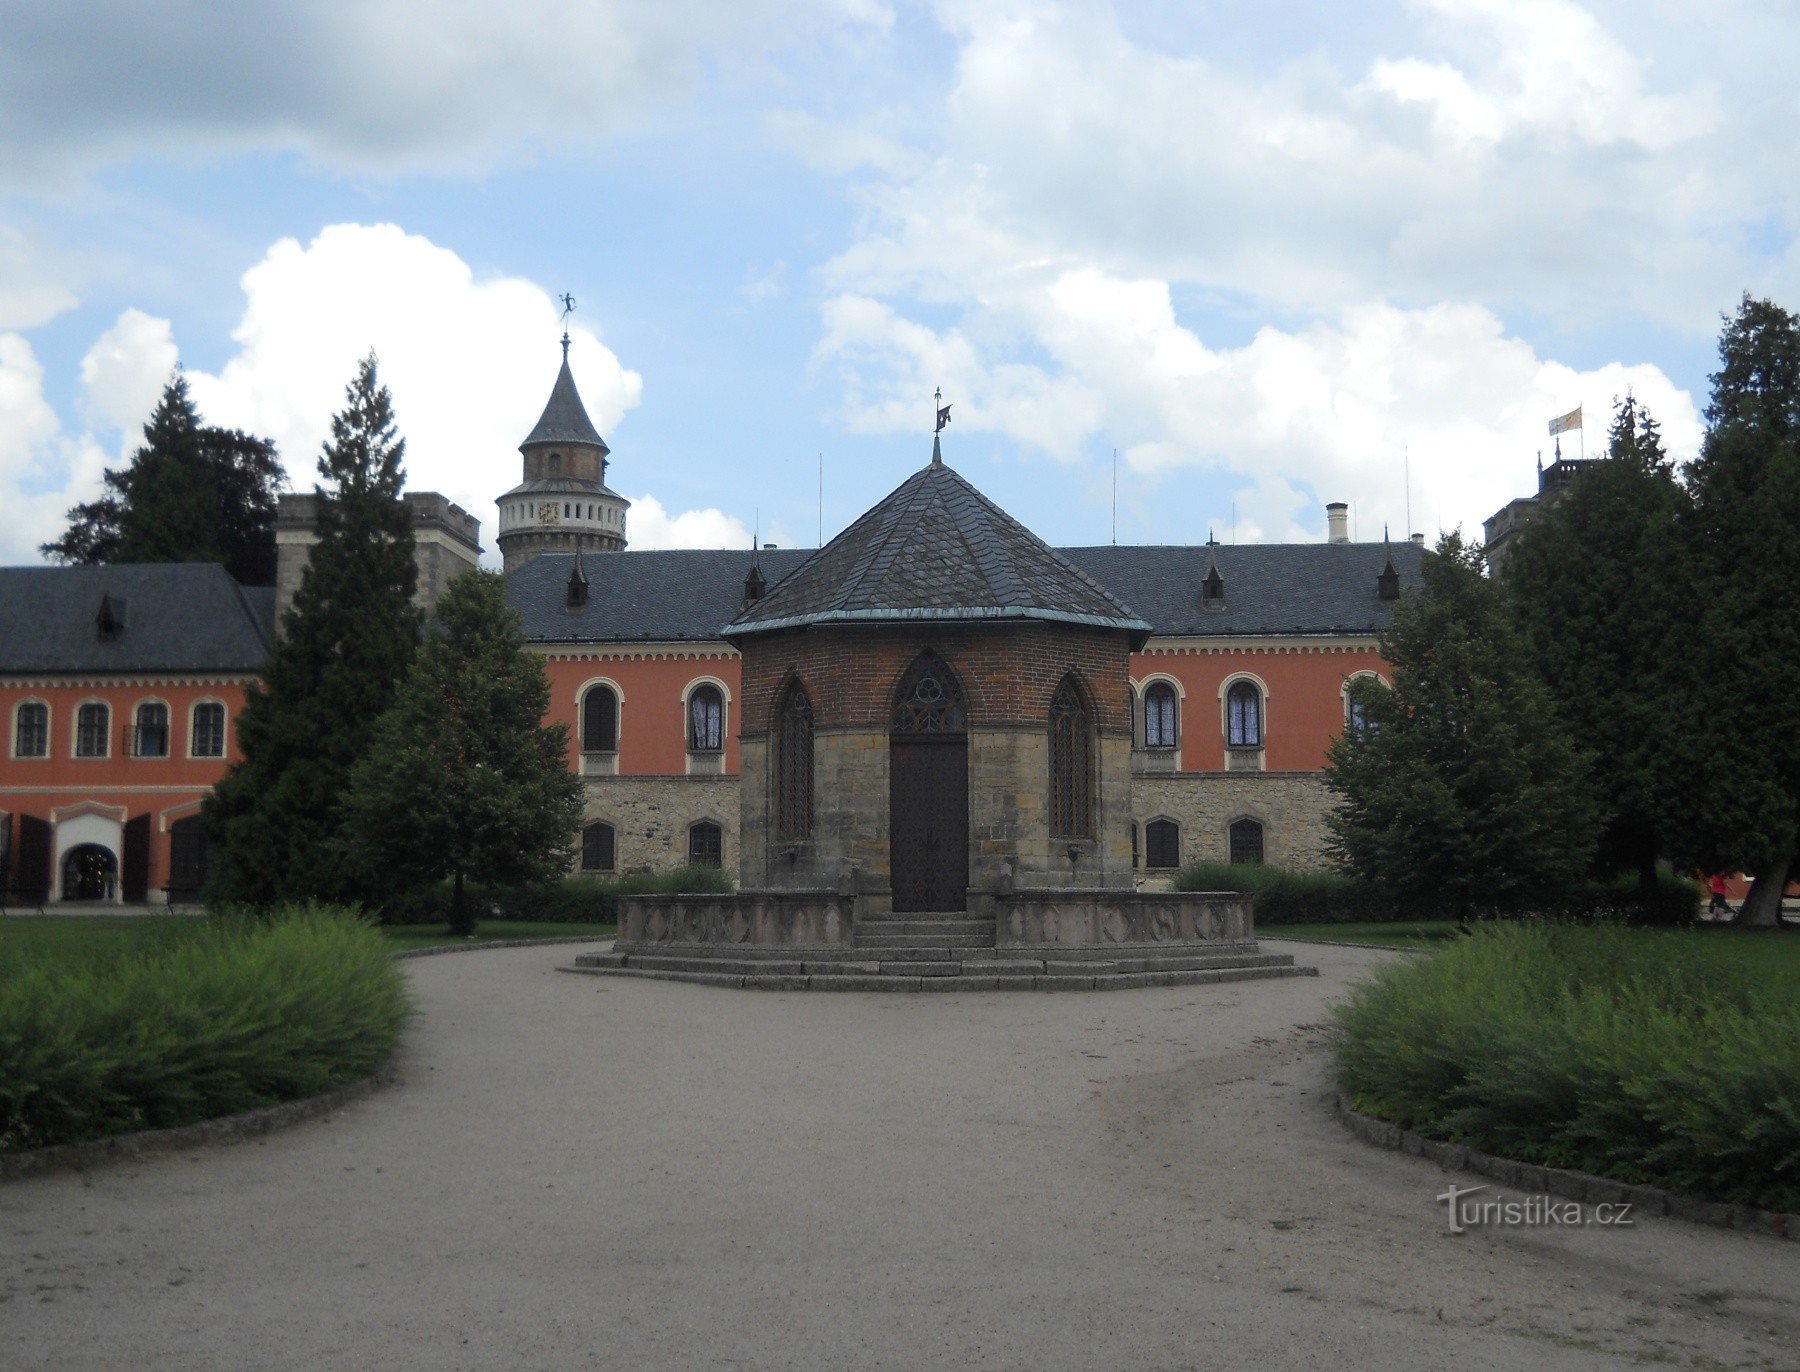 Court of Honor z fontanną, z okrągłą wieżą bretońską i po prawej stronie z kwadratową wieżą austriacką